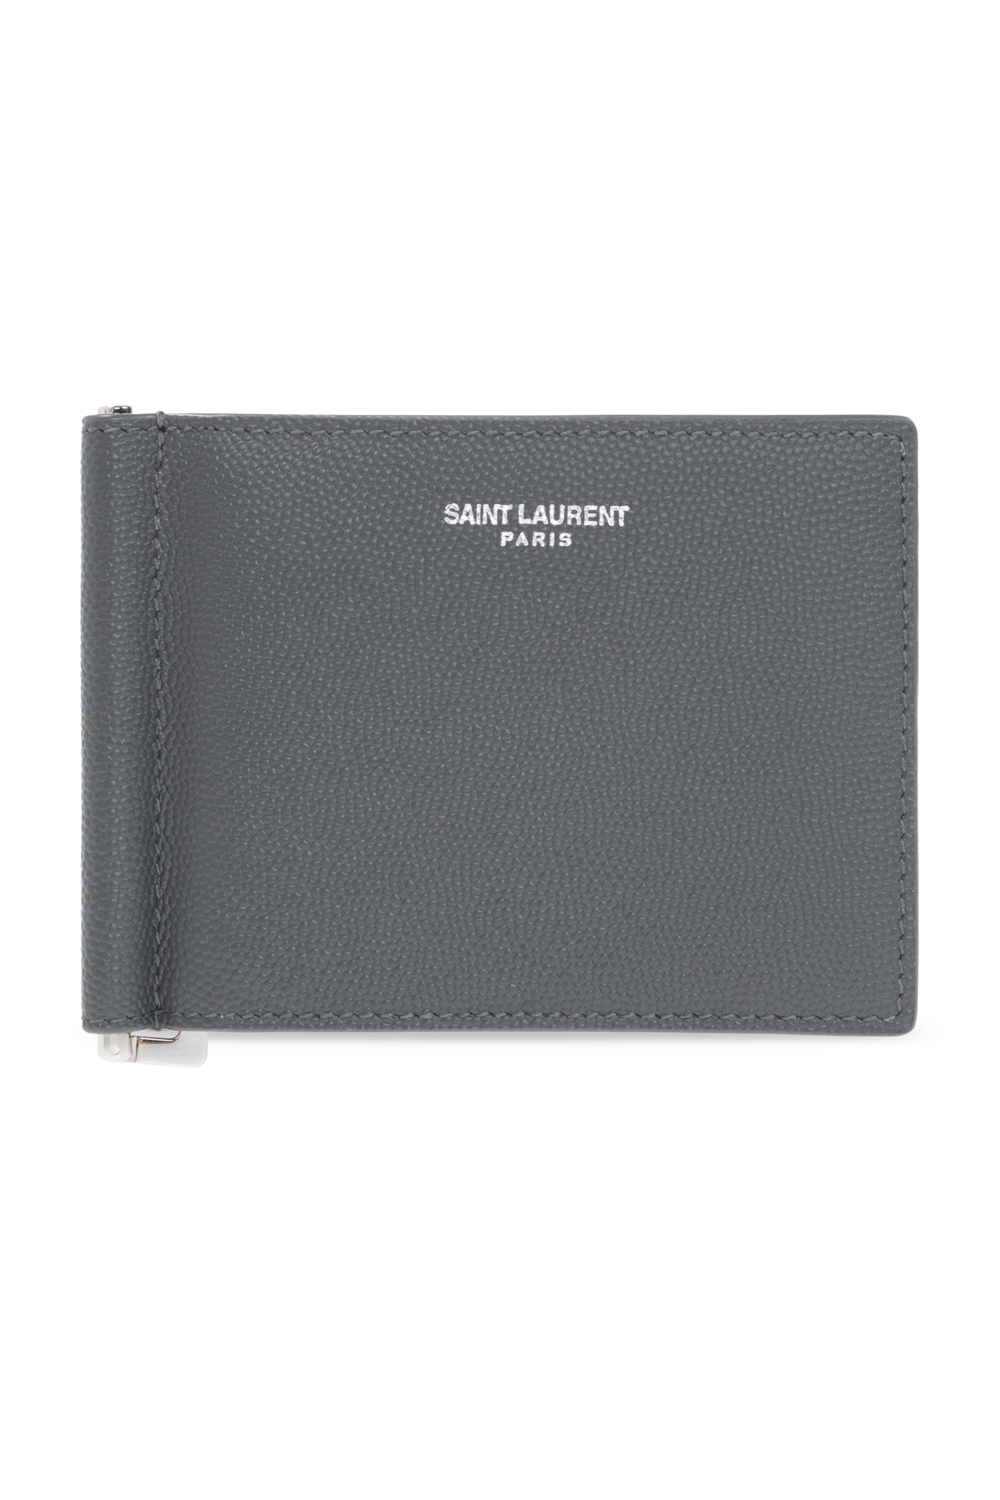 Saint Laurent Bill Clip with Card Case in Grain de Poudre Embossed Leather - Black - Men